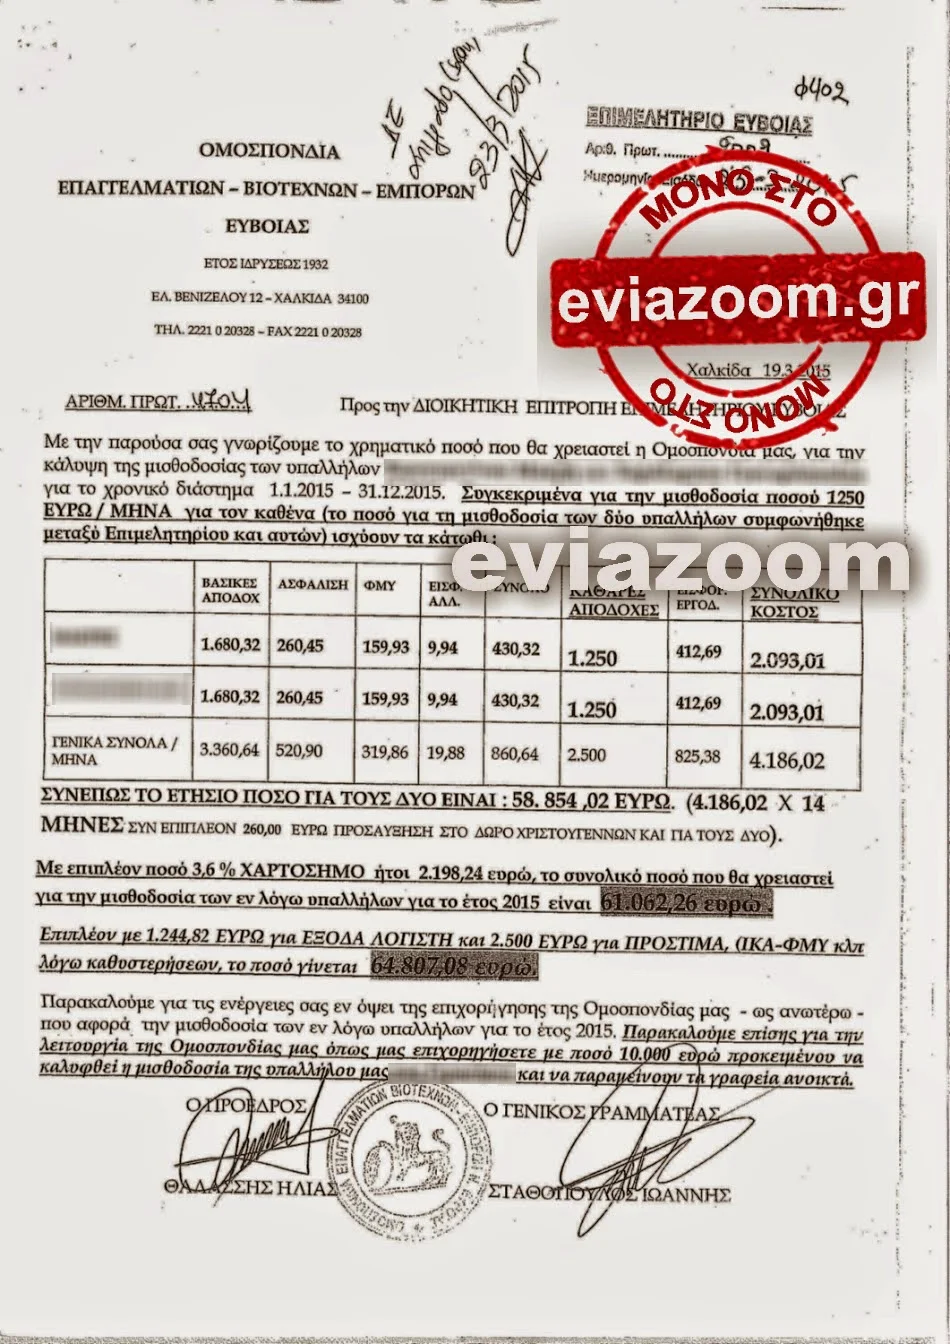 Επιμελητήριο Εύβοιας: Αγιοστρατίτη και Θαλάσης πήραν 120.000 ευρώ επιχορήγηση για να πληρώσουν πέντε υπαλλήλους - Οι μισθοί ξεπερνούν τα 2000 ευρώ - Όλα τα έγγραφα στον αέρα